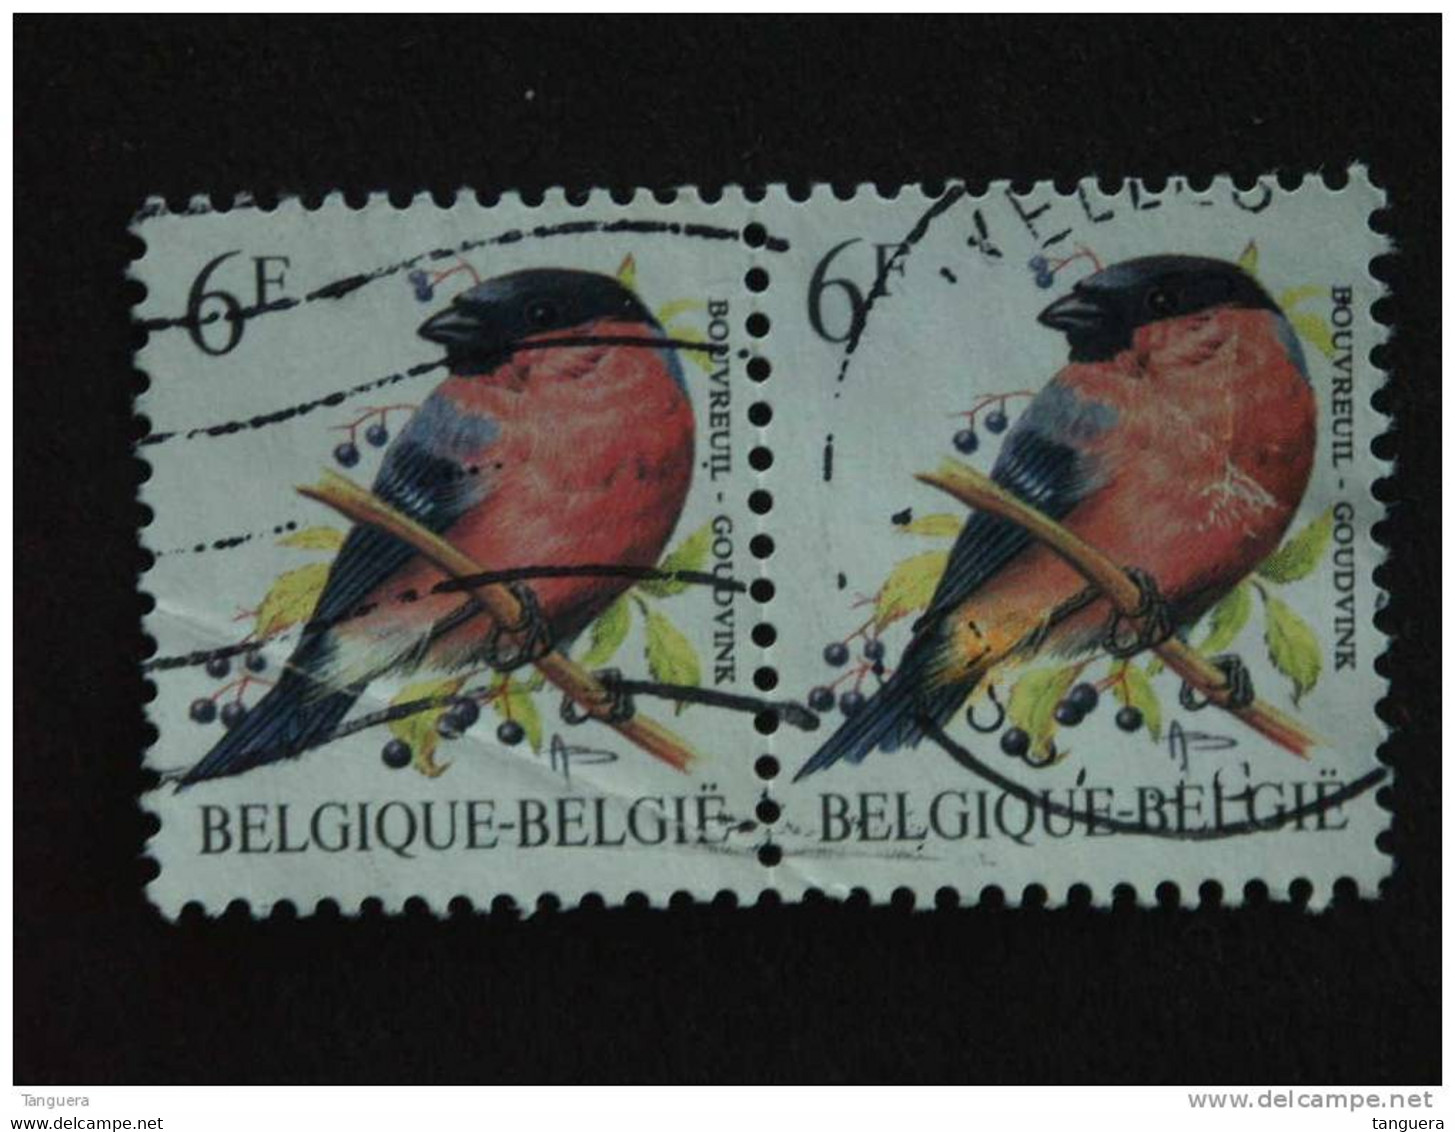 België Belgique Belgium 1988 Goudvink Bouvreuil Phosfer Fout  Erreur?? Vogels Oiseaux André Buzin 2 X Yv 2294 COB 2295 O - Unclassified